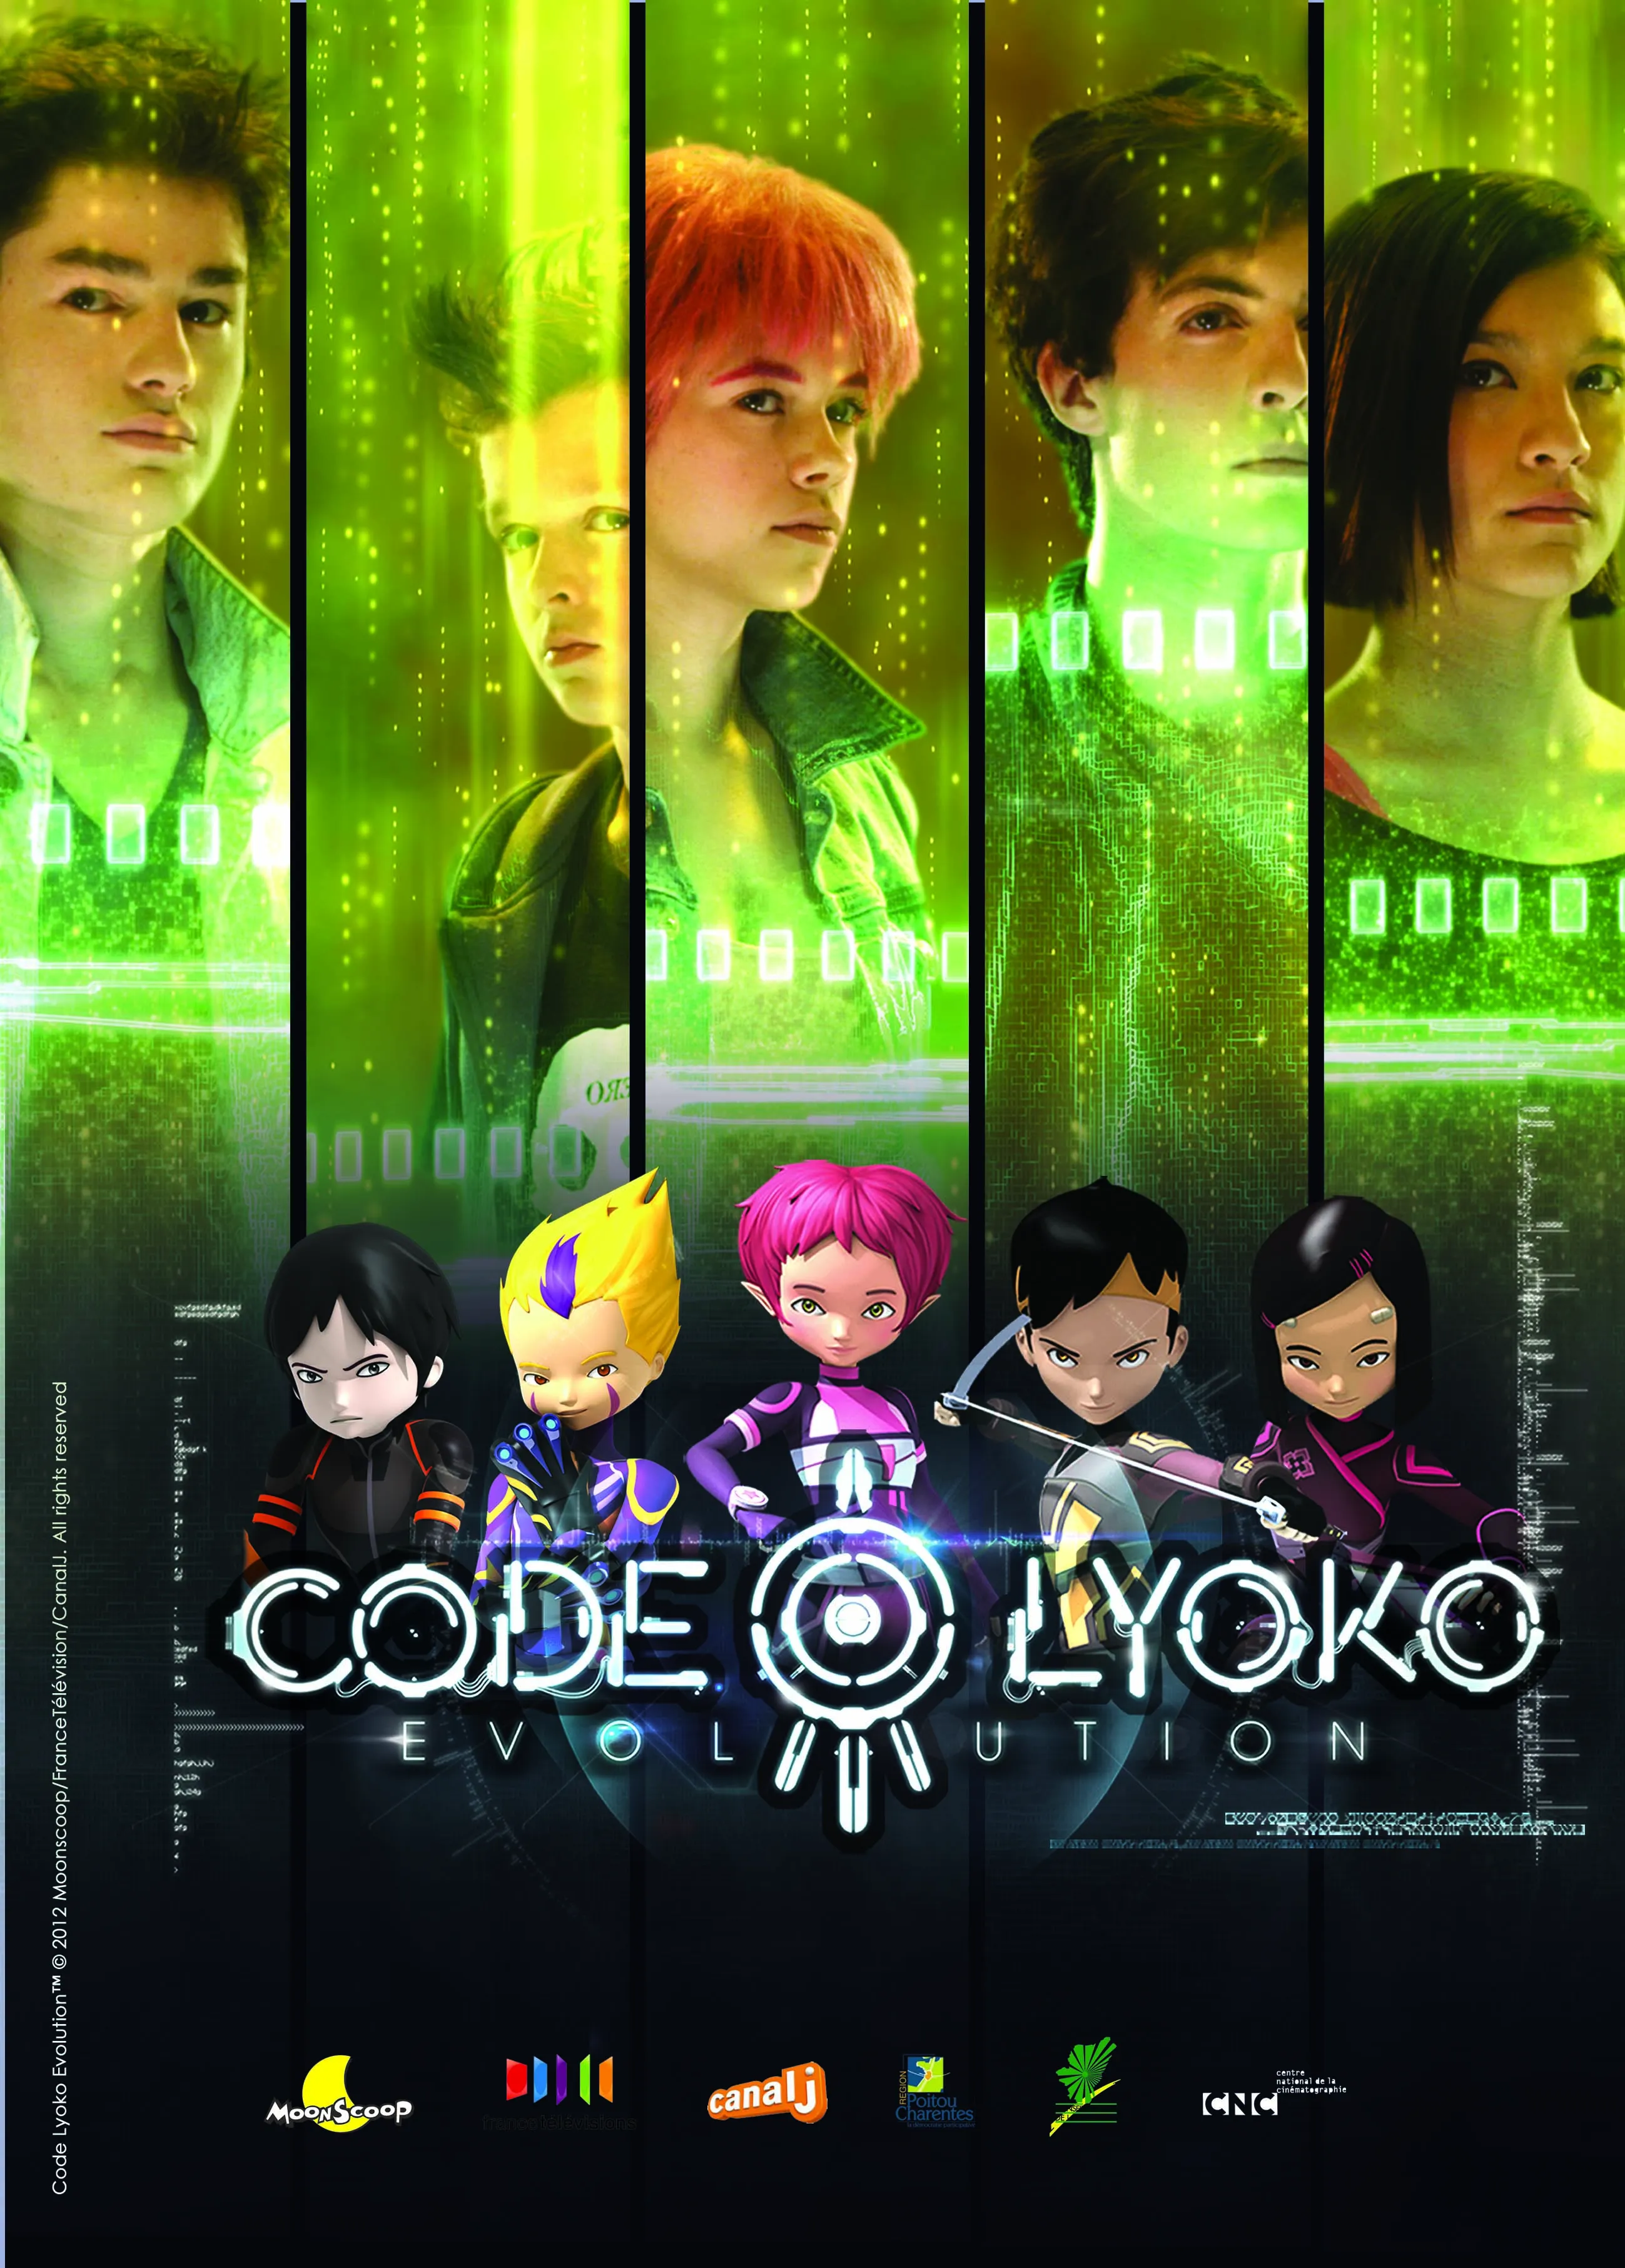 Press review • Code Lyoko - CodeLyoko.